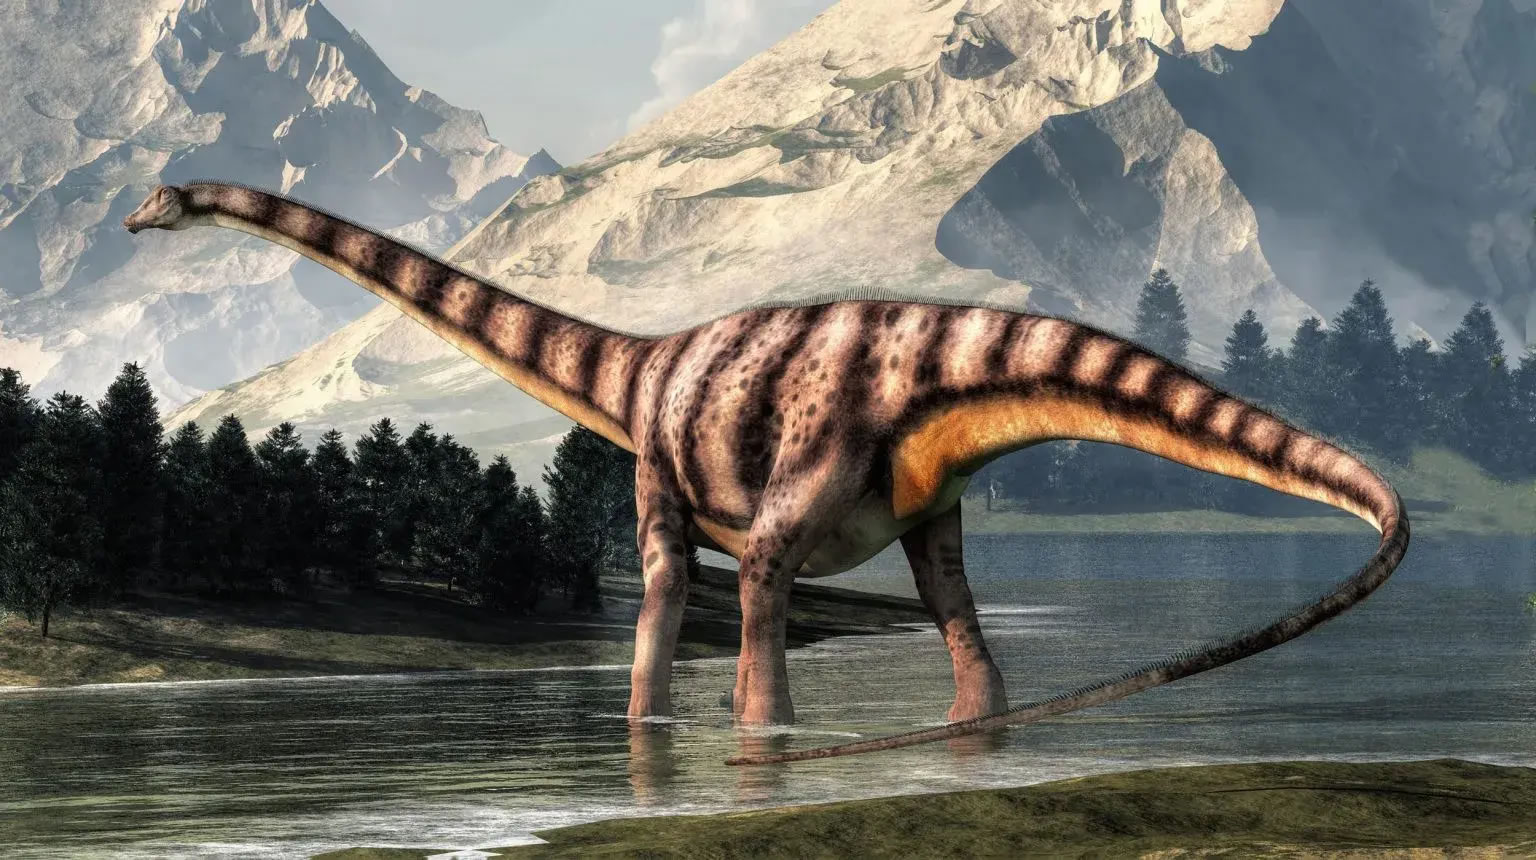 大型食草恐龙梁龙可能能够以每小时100多公里的速度移动其尾巴